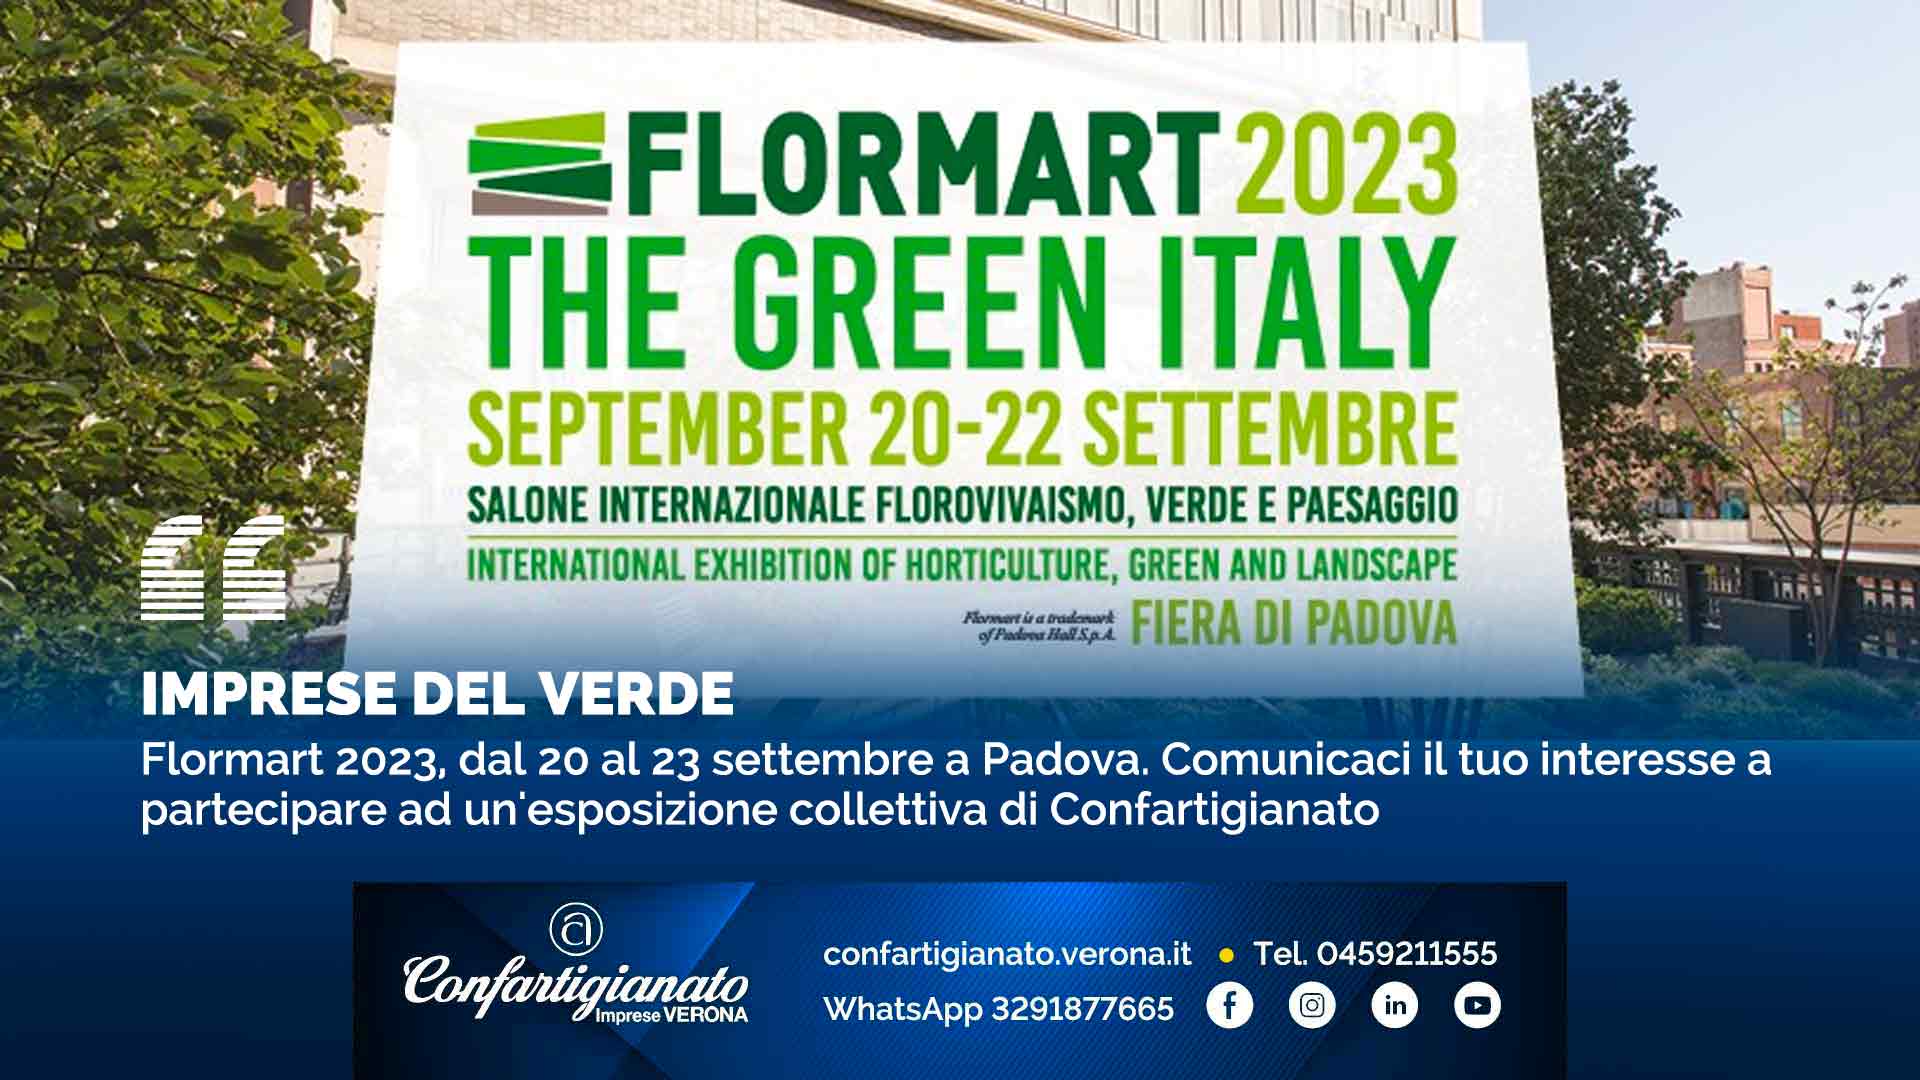 IMPRESE DEL VERDE – Flormart 2023, dal 20 al 23 settembre a Padova. Comunicaci il tuo interesse a partecipare ad un'esposizione collettiva di Confartigianato